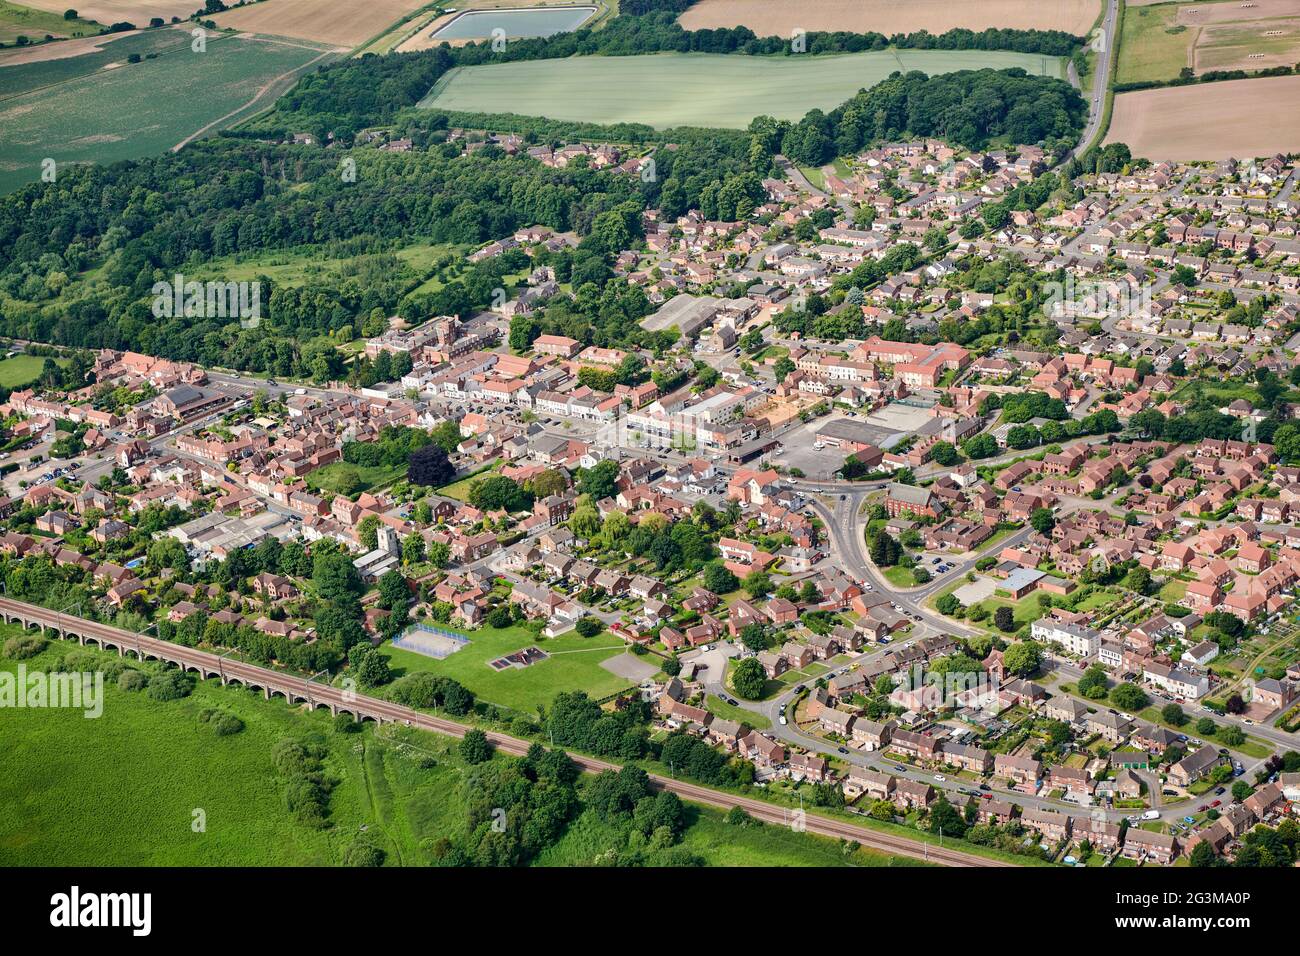 Vue aérienne du centre-ville de Bawtry, dans le Yorkshire du Sud, dans le nord de l'Angleterre, au Royaume-Uni Banque D'Images